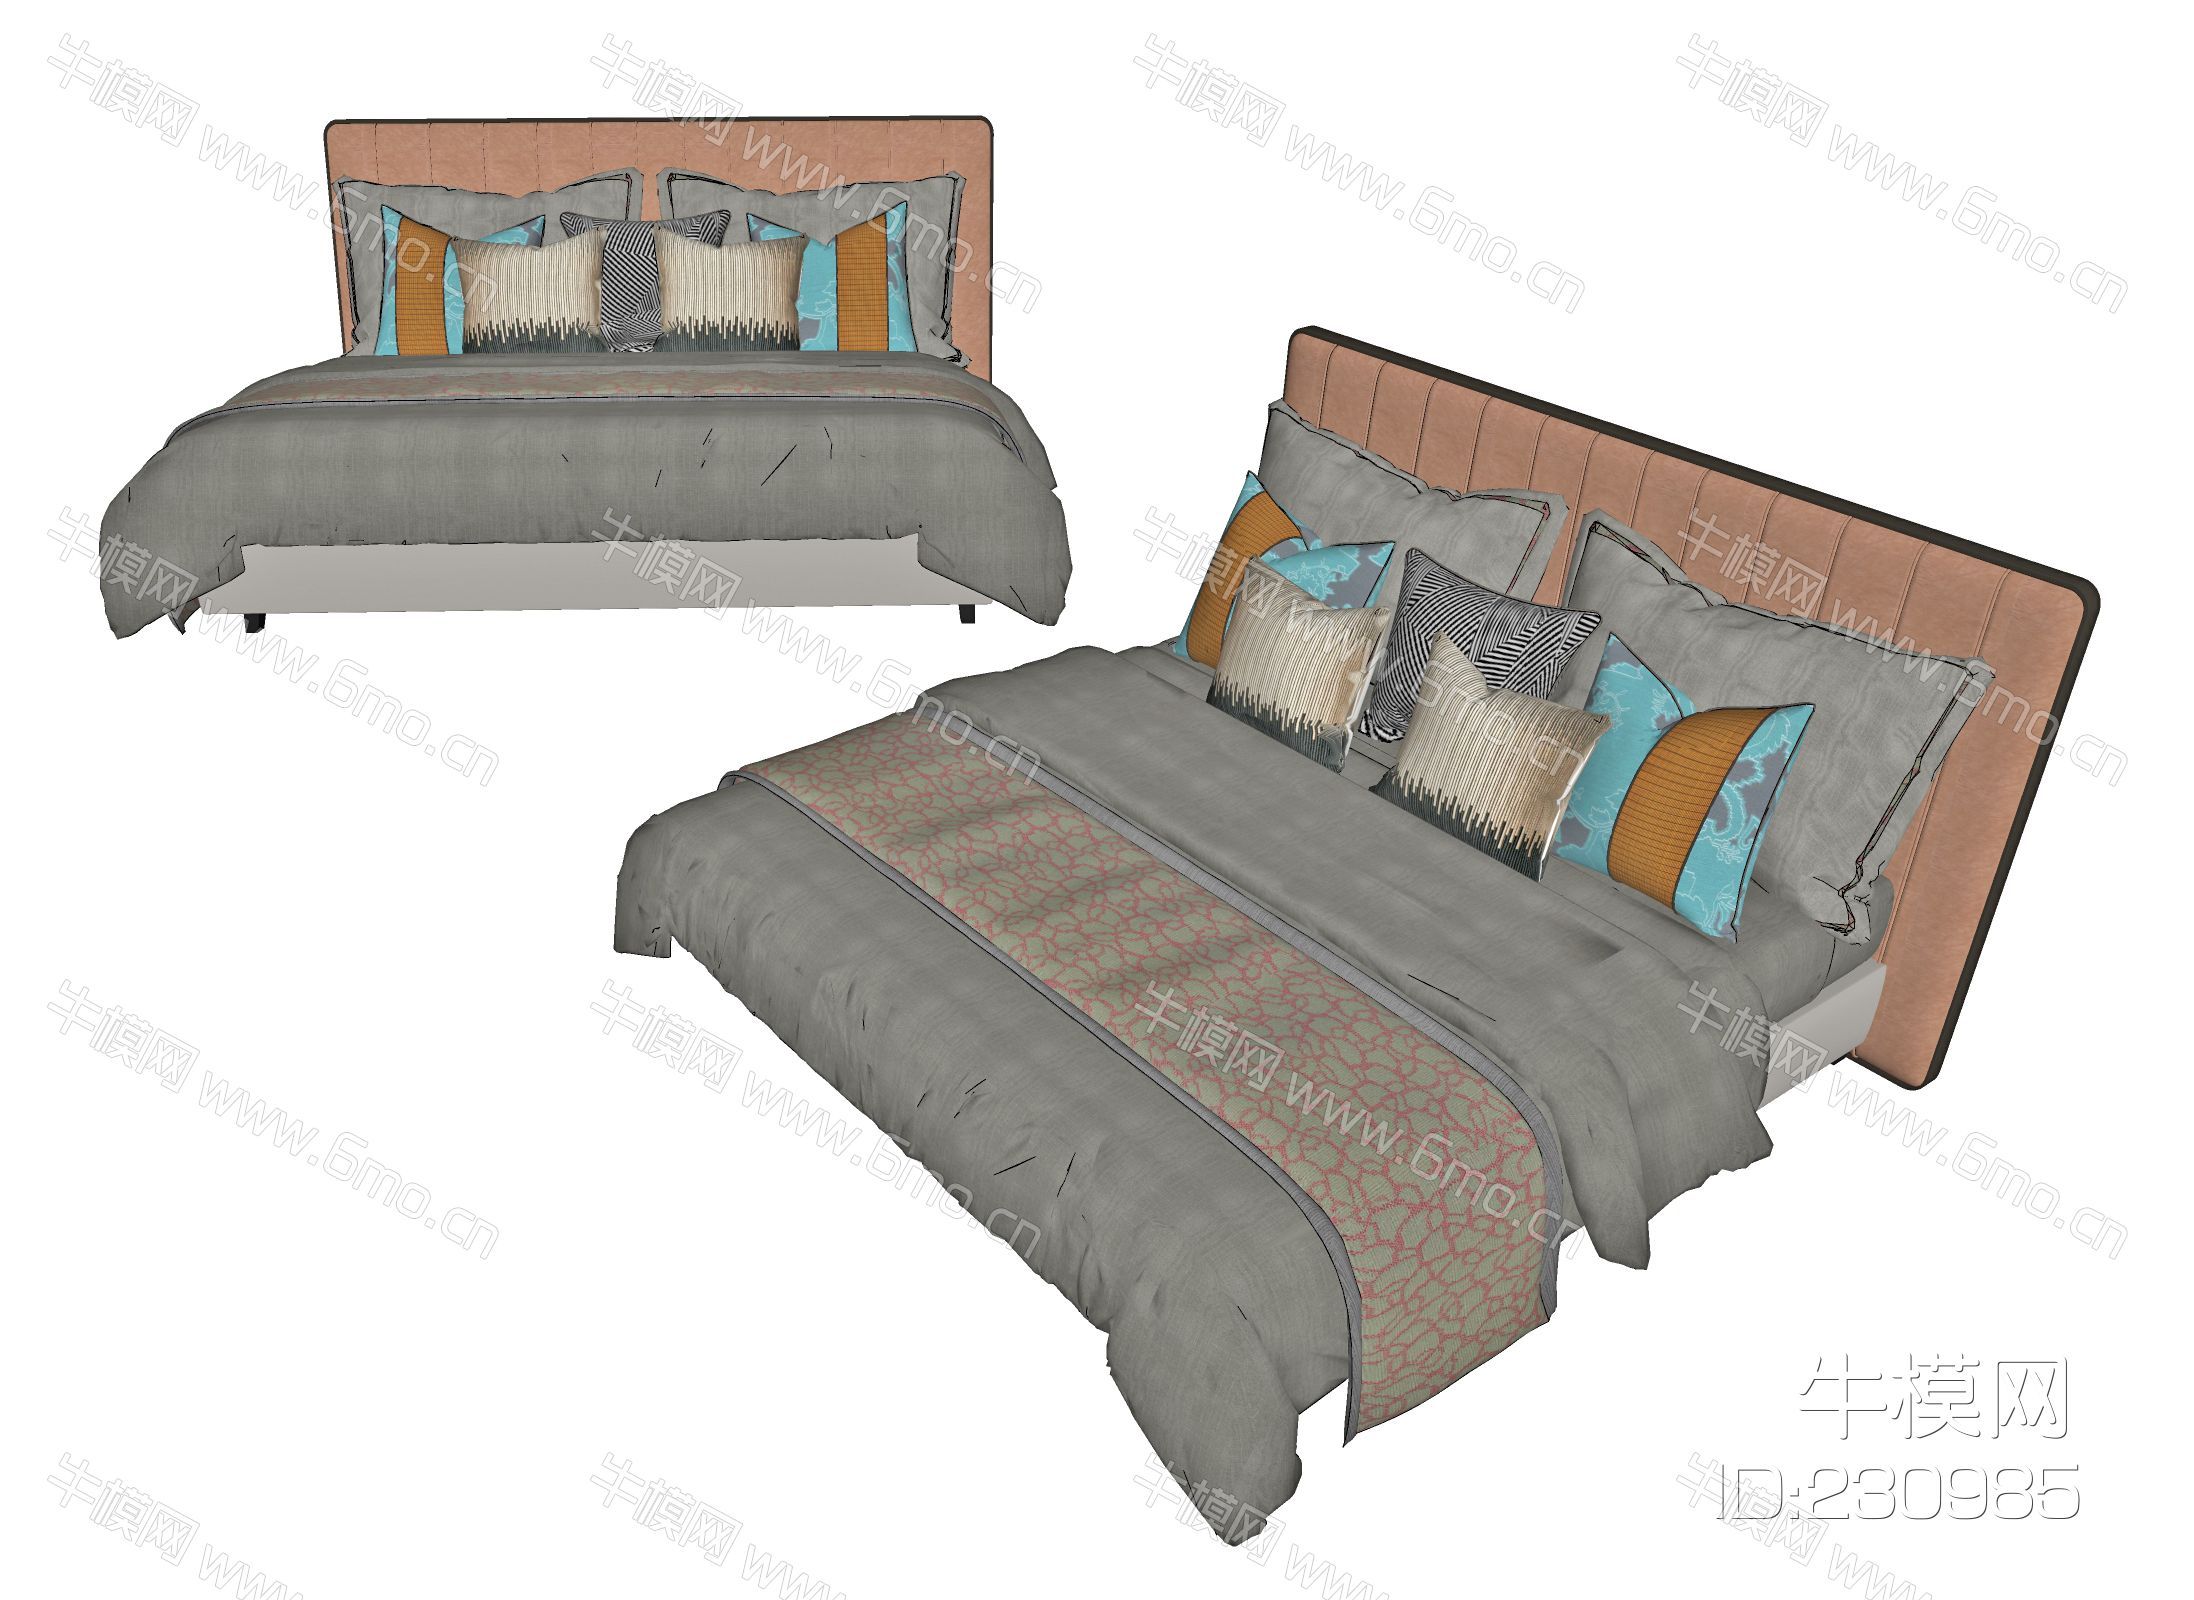 新中式双人床，主卧床，床品，床上摆件，抱枕，被子，床，现代双人床，现代床